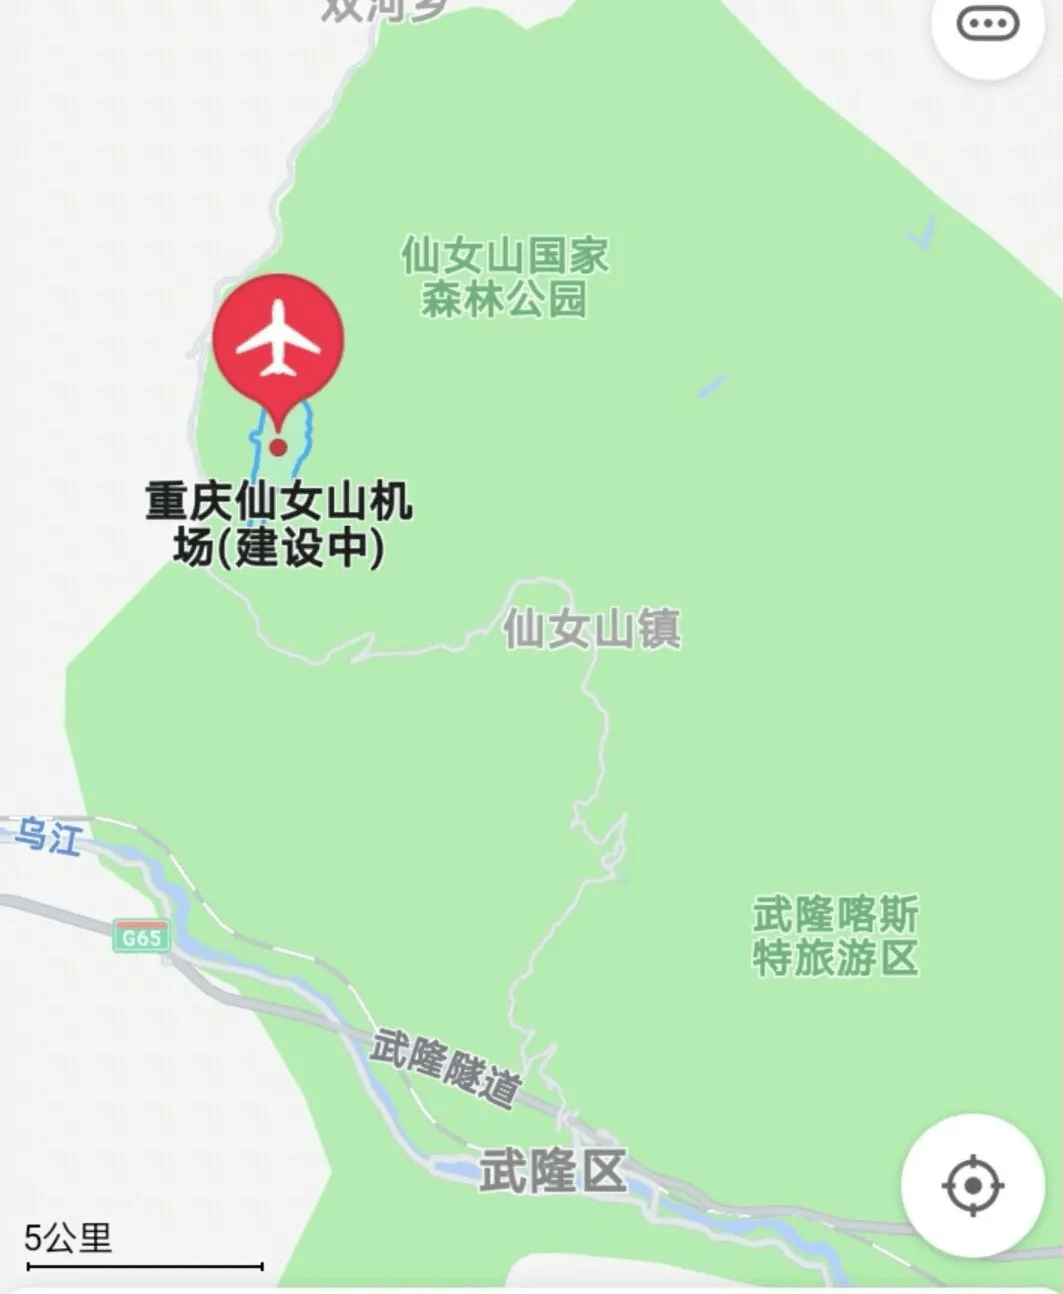 重庆仙女山机场首航成功 仅需25分钟 到仙女山滑雪